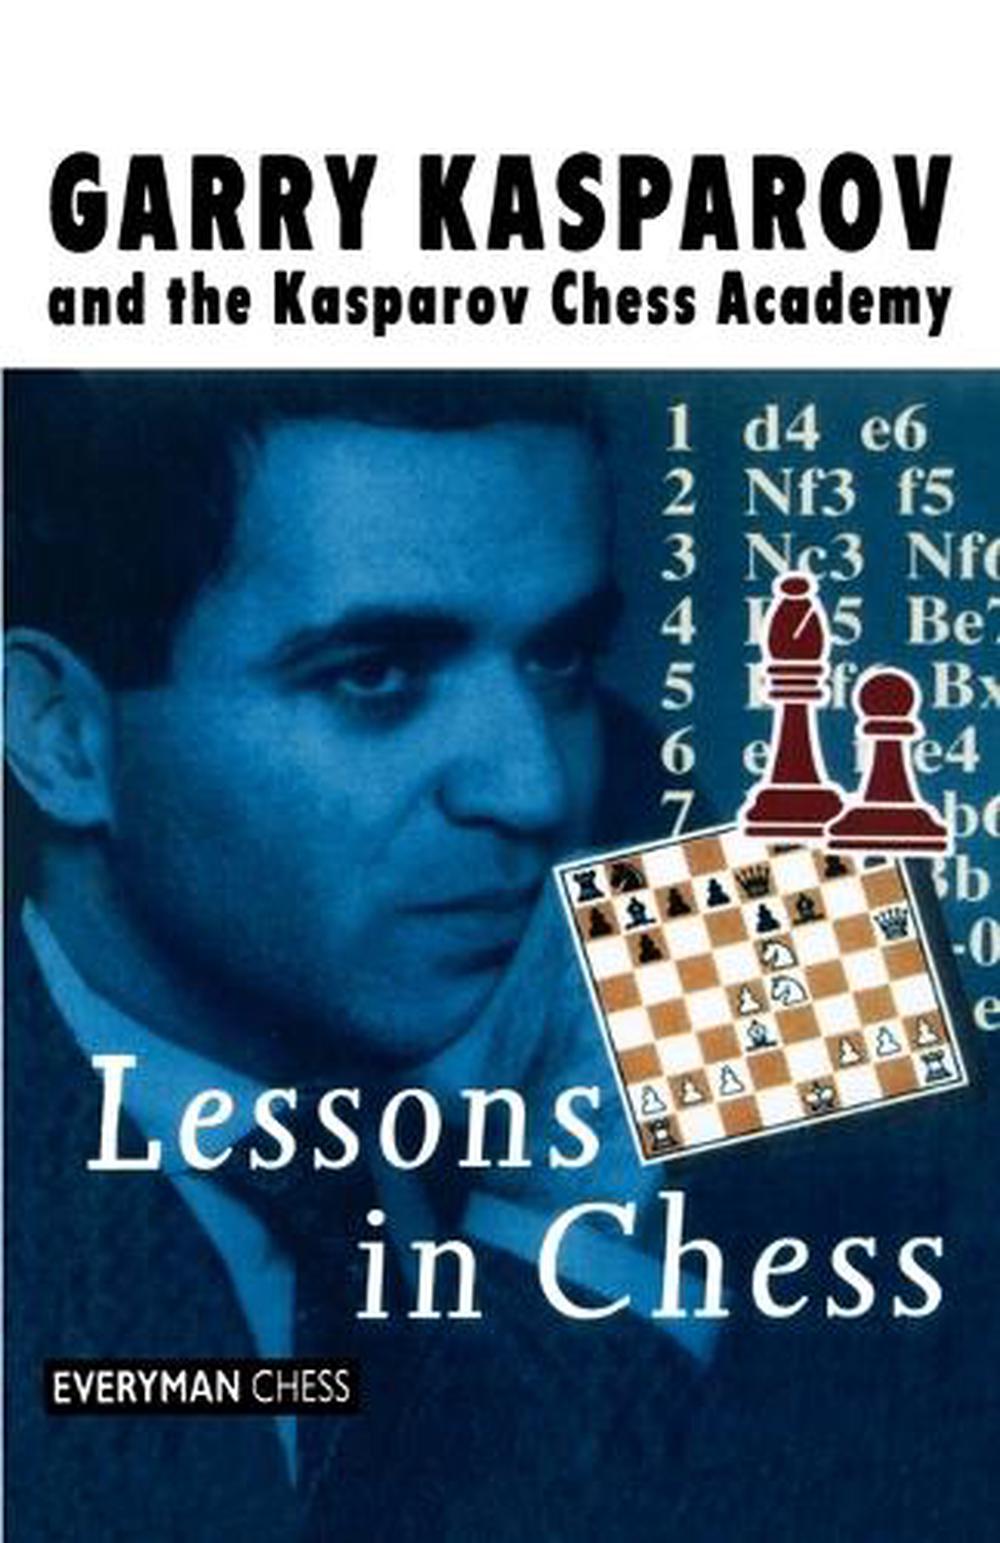 kasparov chess lessons